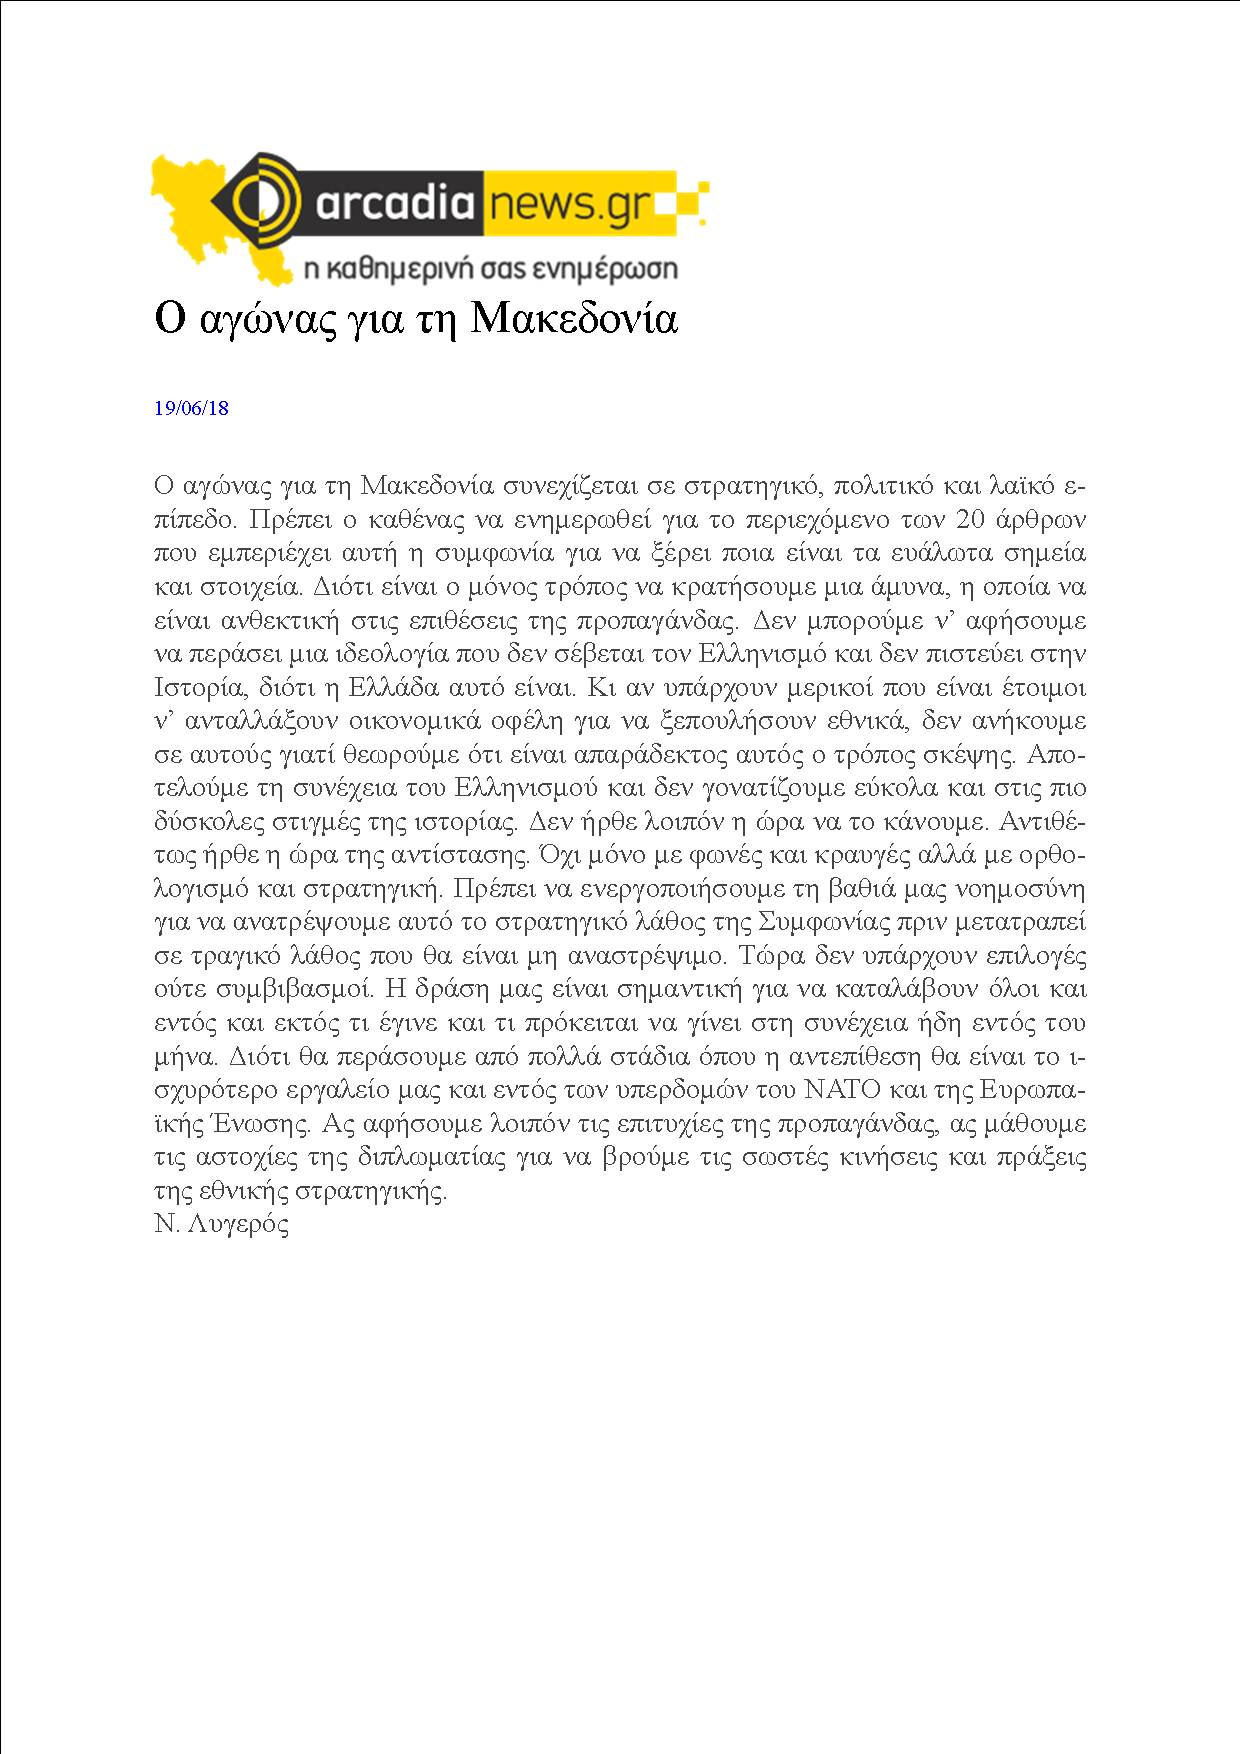 Ο αγώνας για τη Μακεδονία, arcadianews, 19/06/2018 - Publication